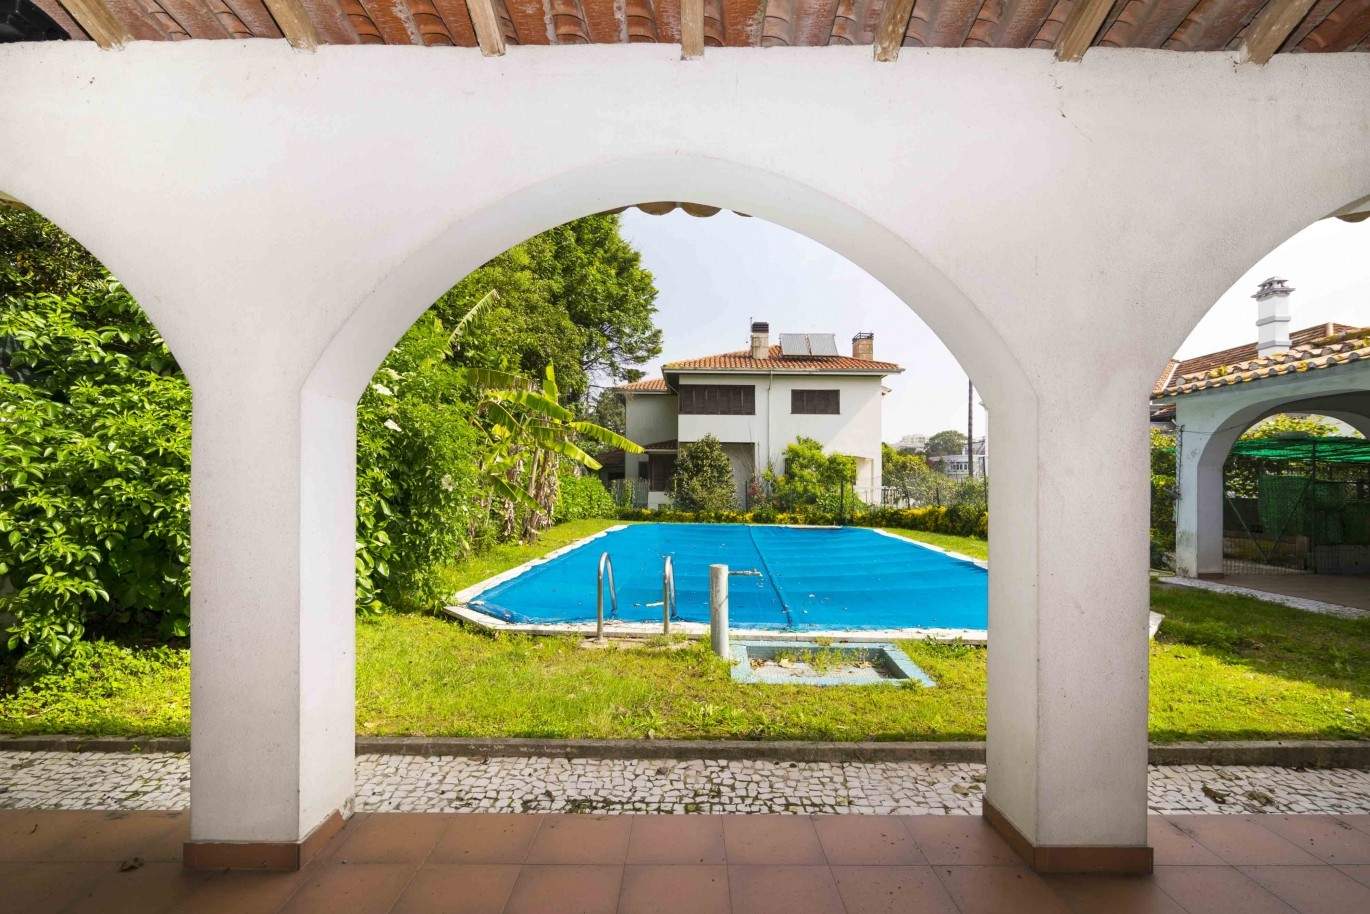 Venda de moradia de 4 frentes, com jardim e piscina, Boavista, Porto_29670